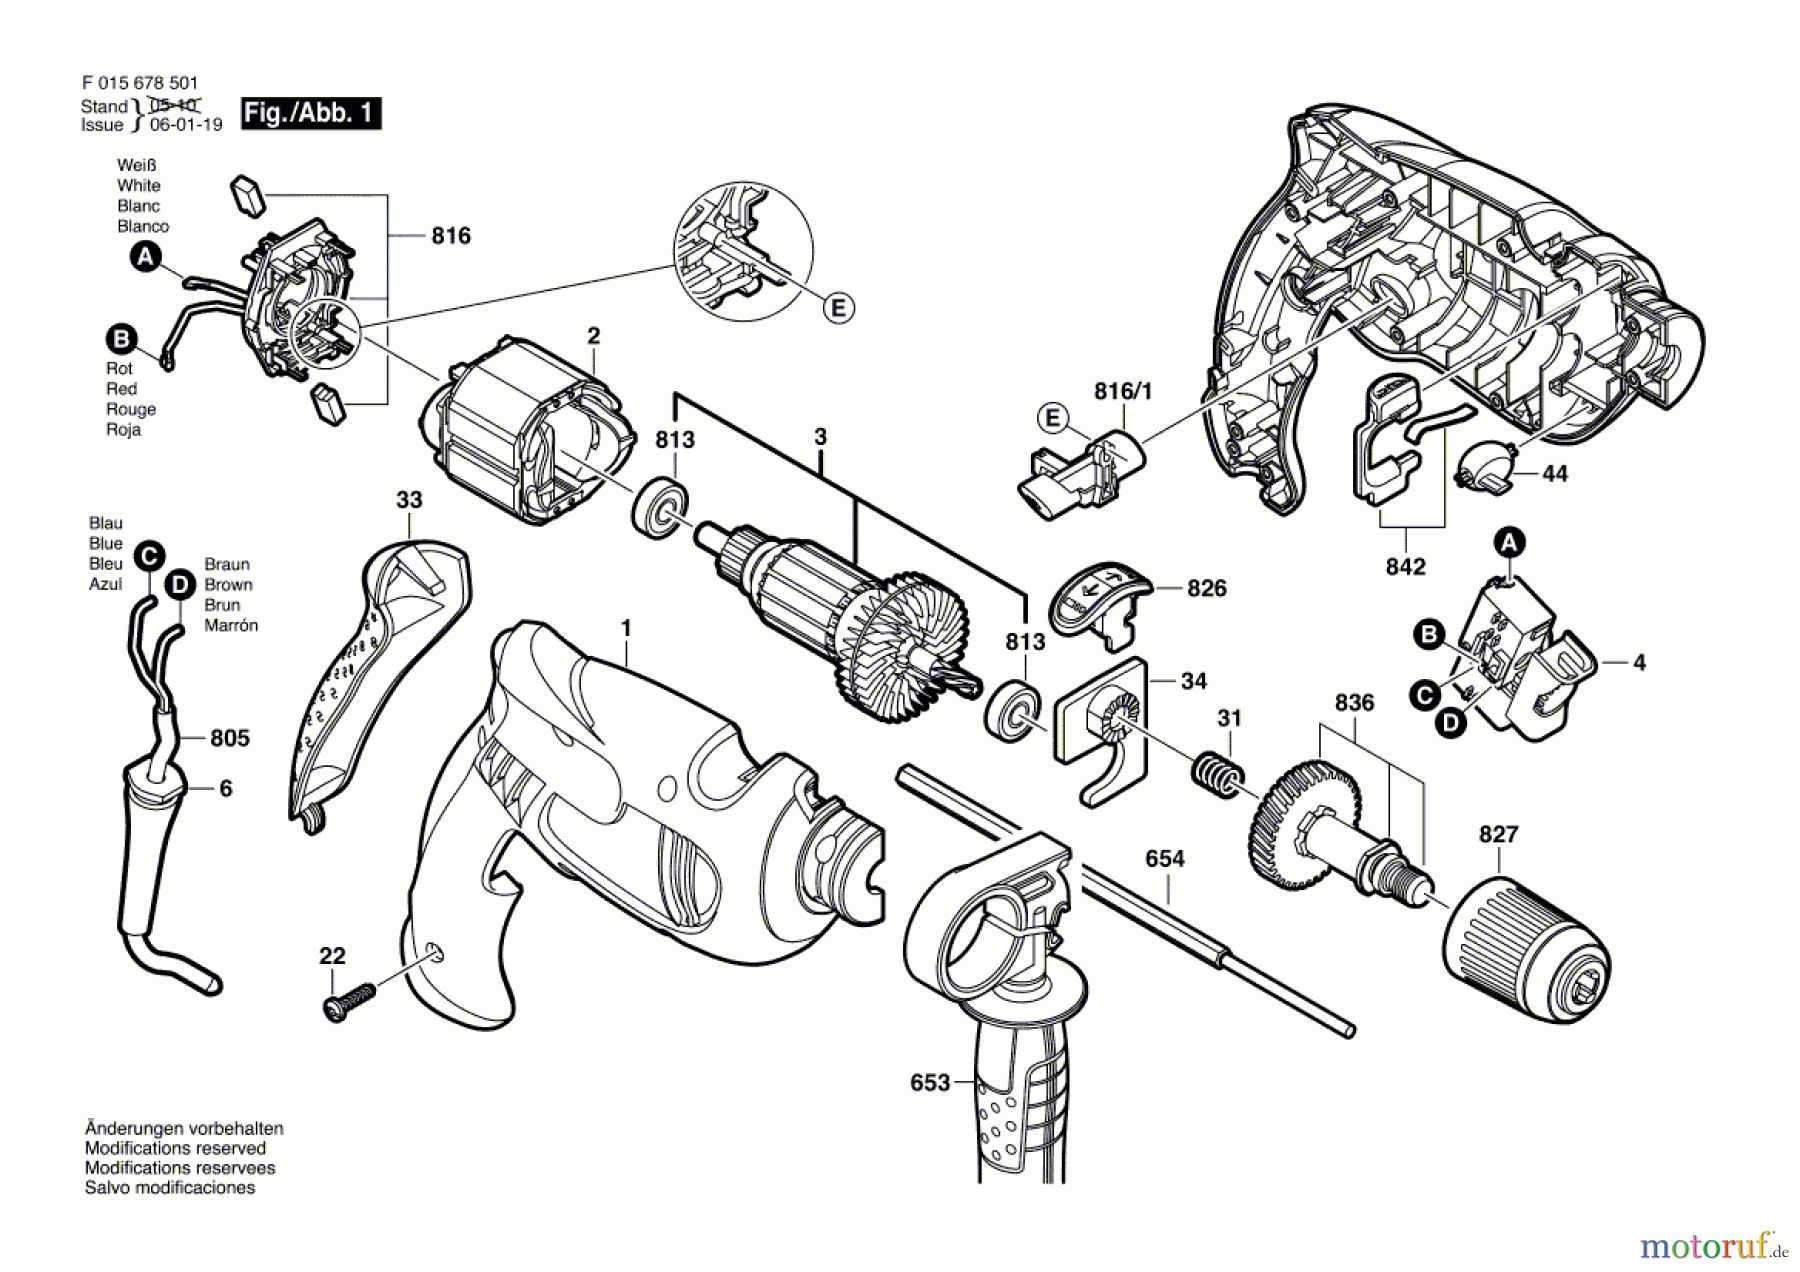  Bosch Werkzeug Schlagbohrmaschine 6785 Seite 1